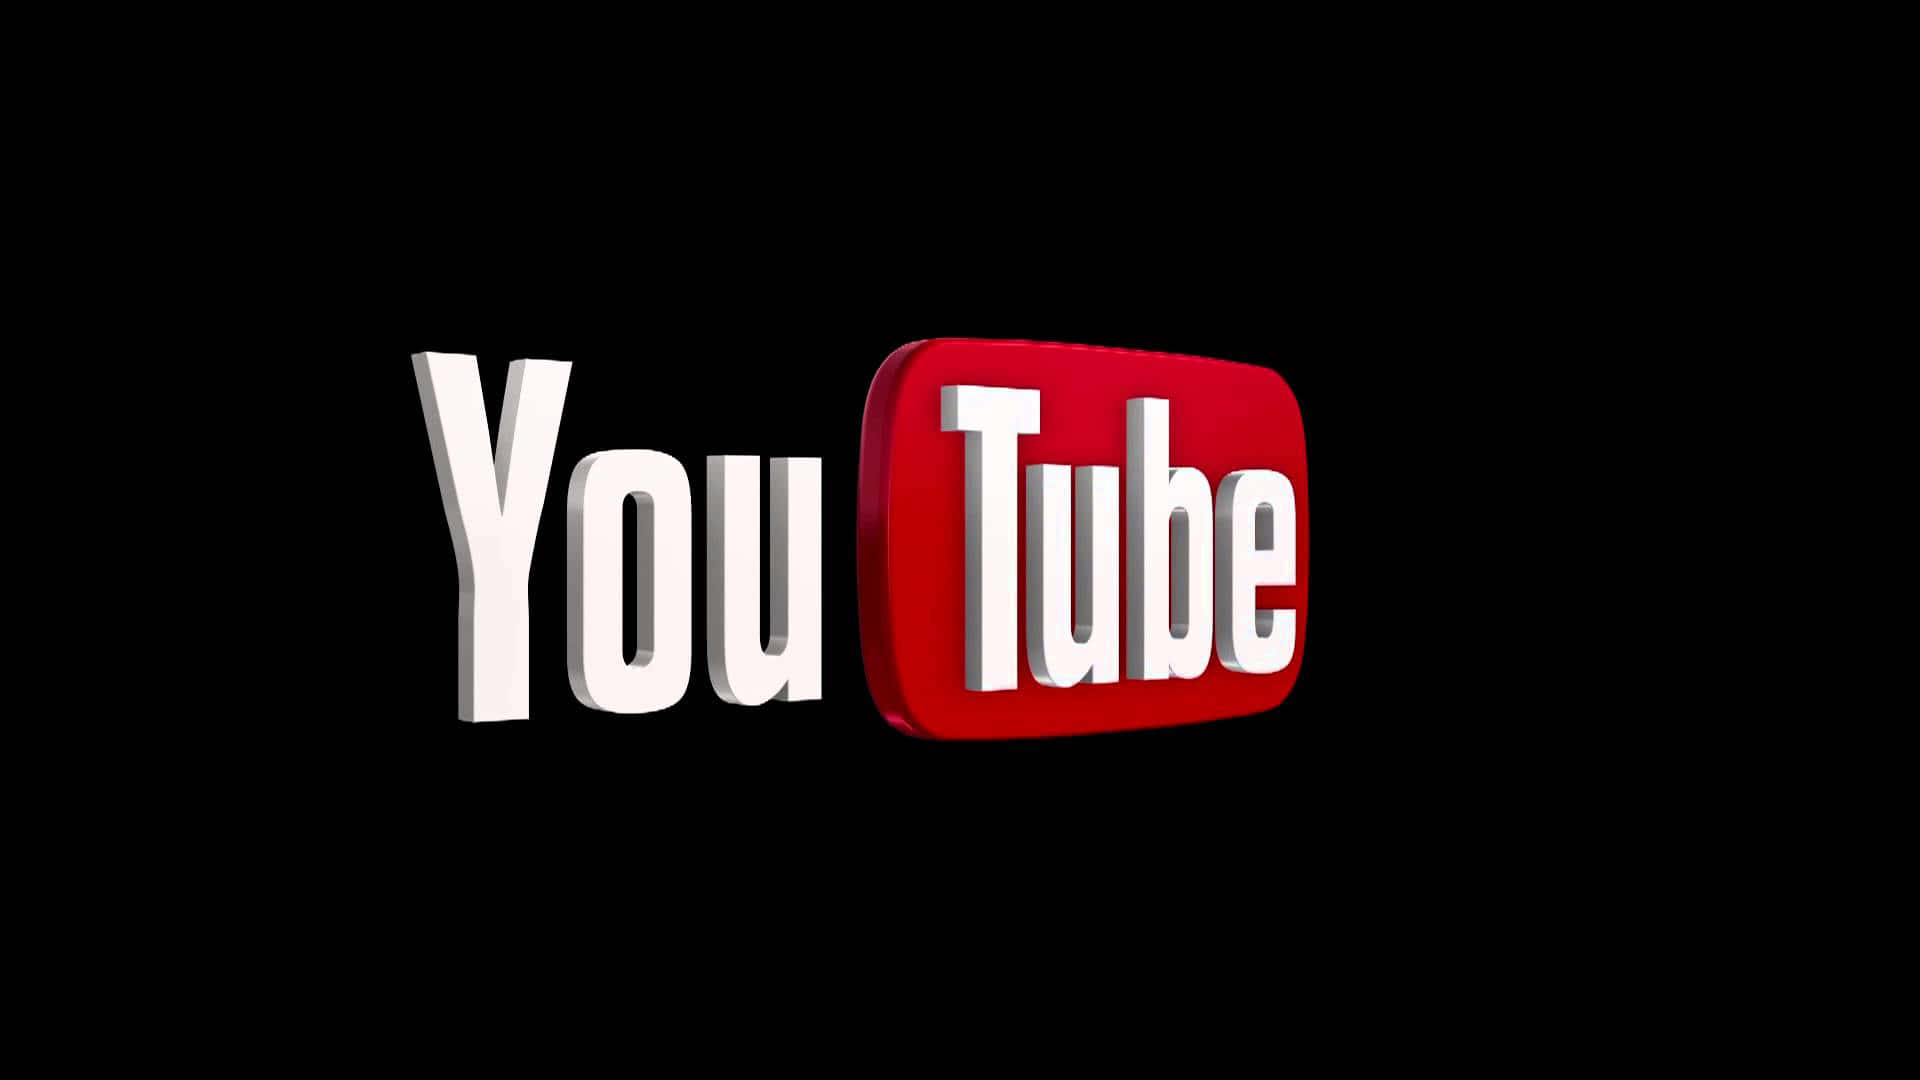 Logode Youtube En Color Negro